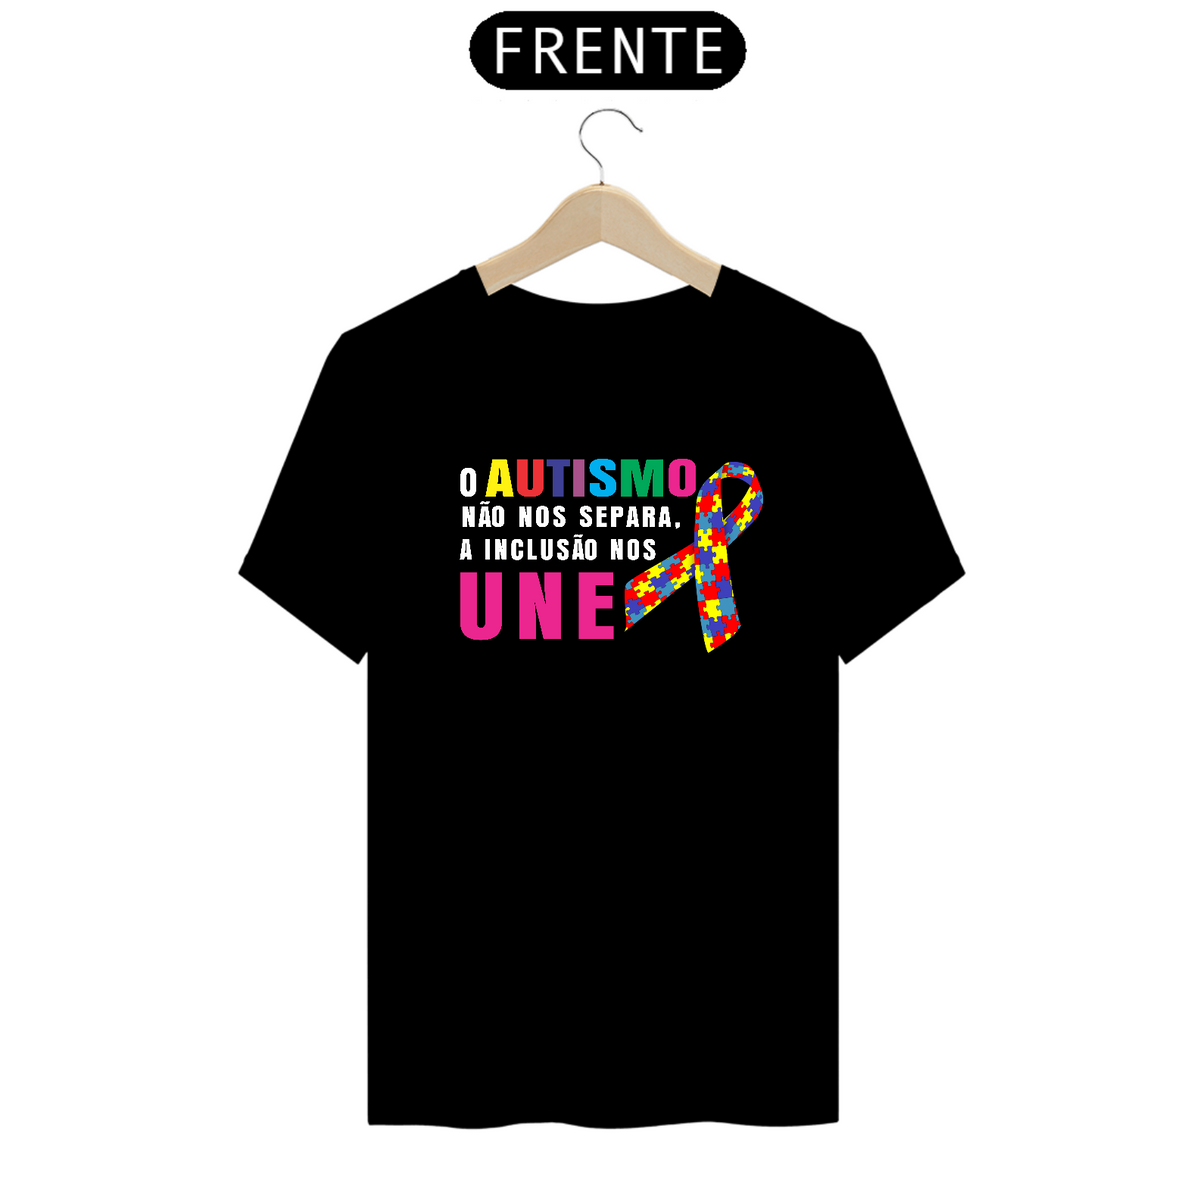 Nome do produto: T-shirt - autismo (o autismo não nos separa, a inclusão nos une)